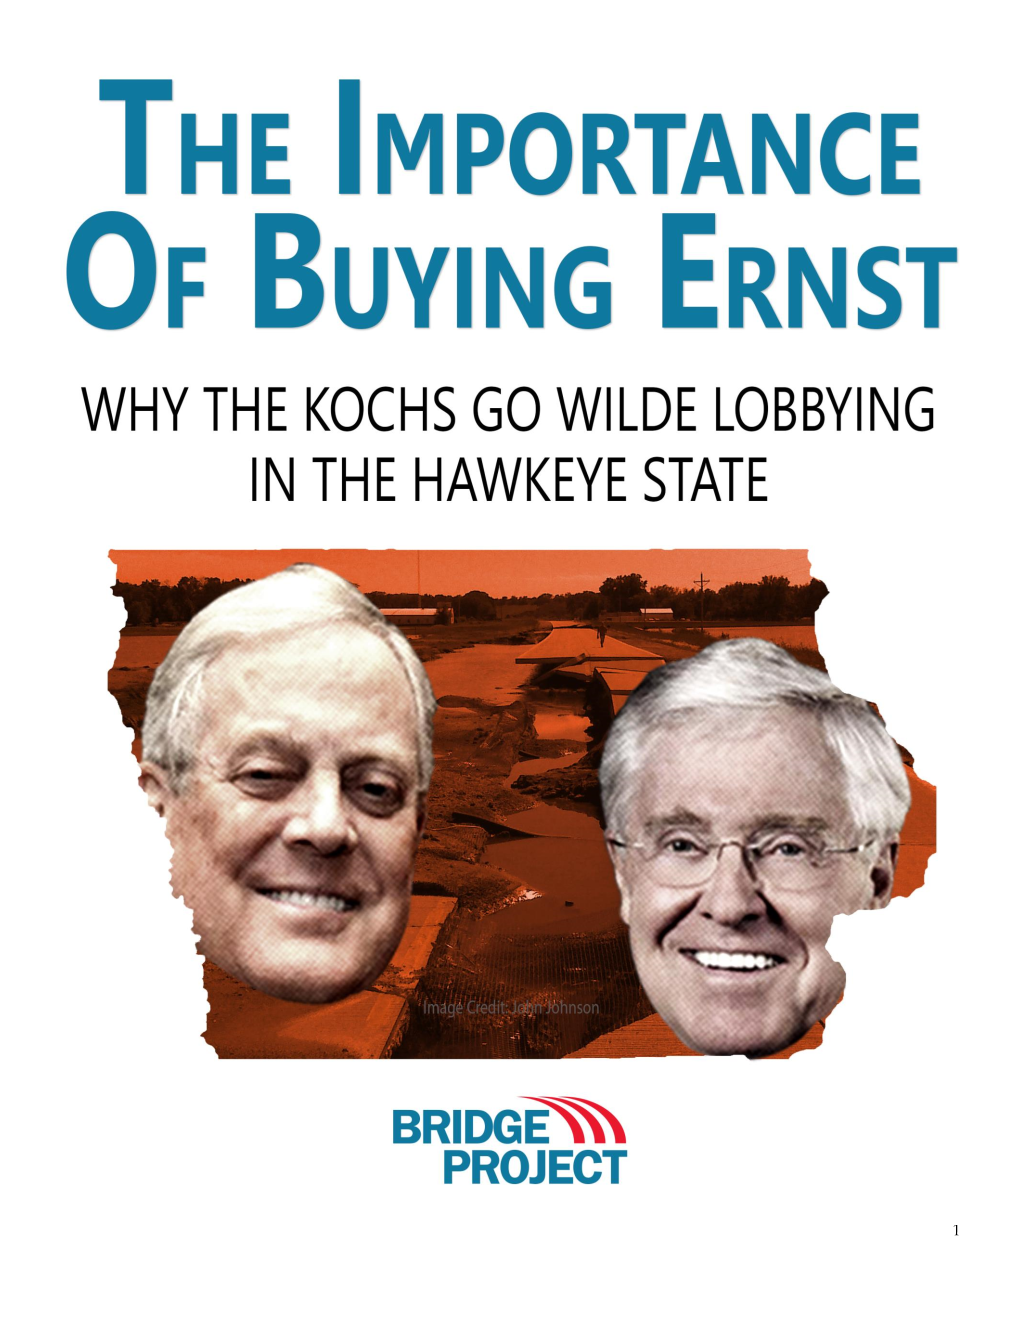 The Koch Agenda in Iowa: Americans for Prosperity